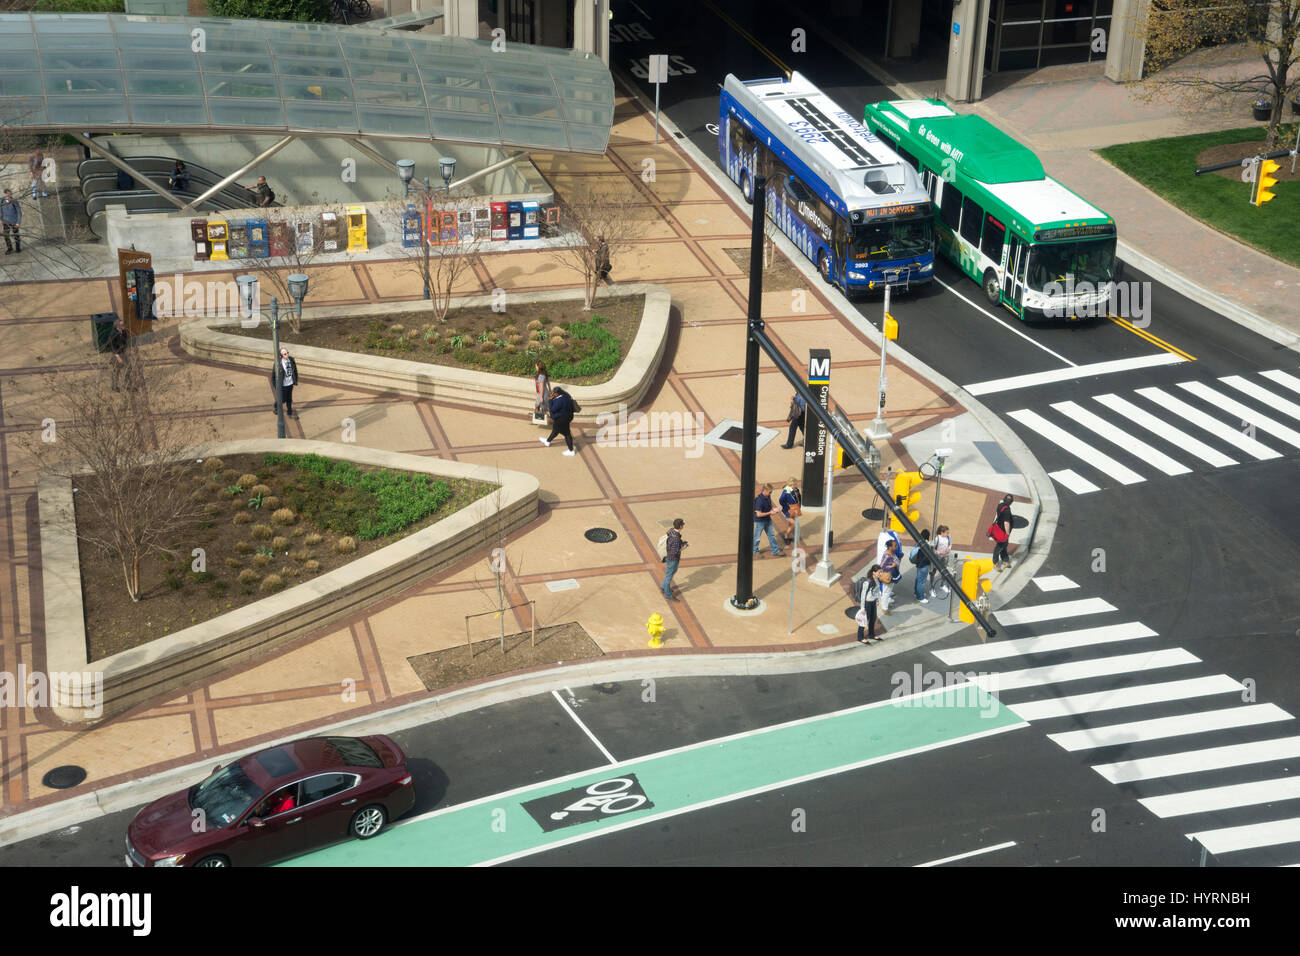 La città di cristallo stazione della metropolitana come a sinistra, autobus regionali sono a destra; la pista ciclabile è in primo piano. Foto Stock